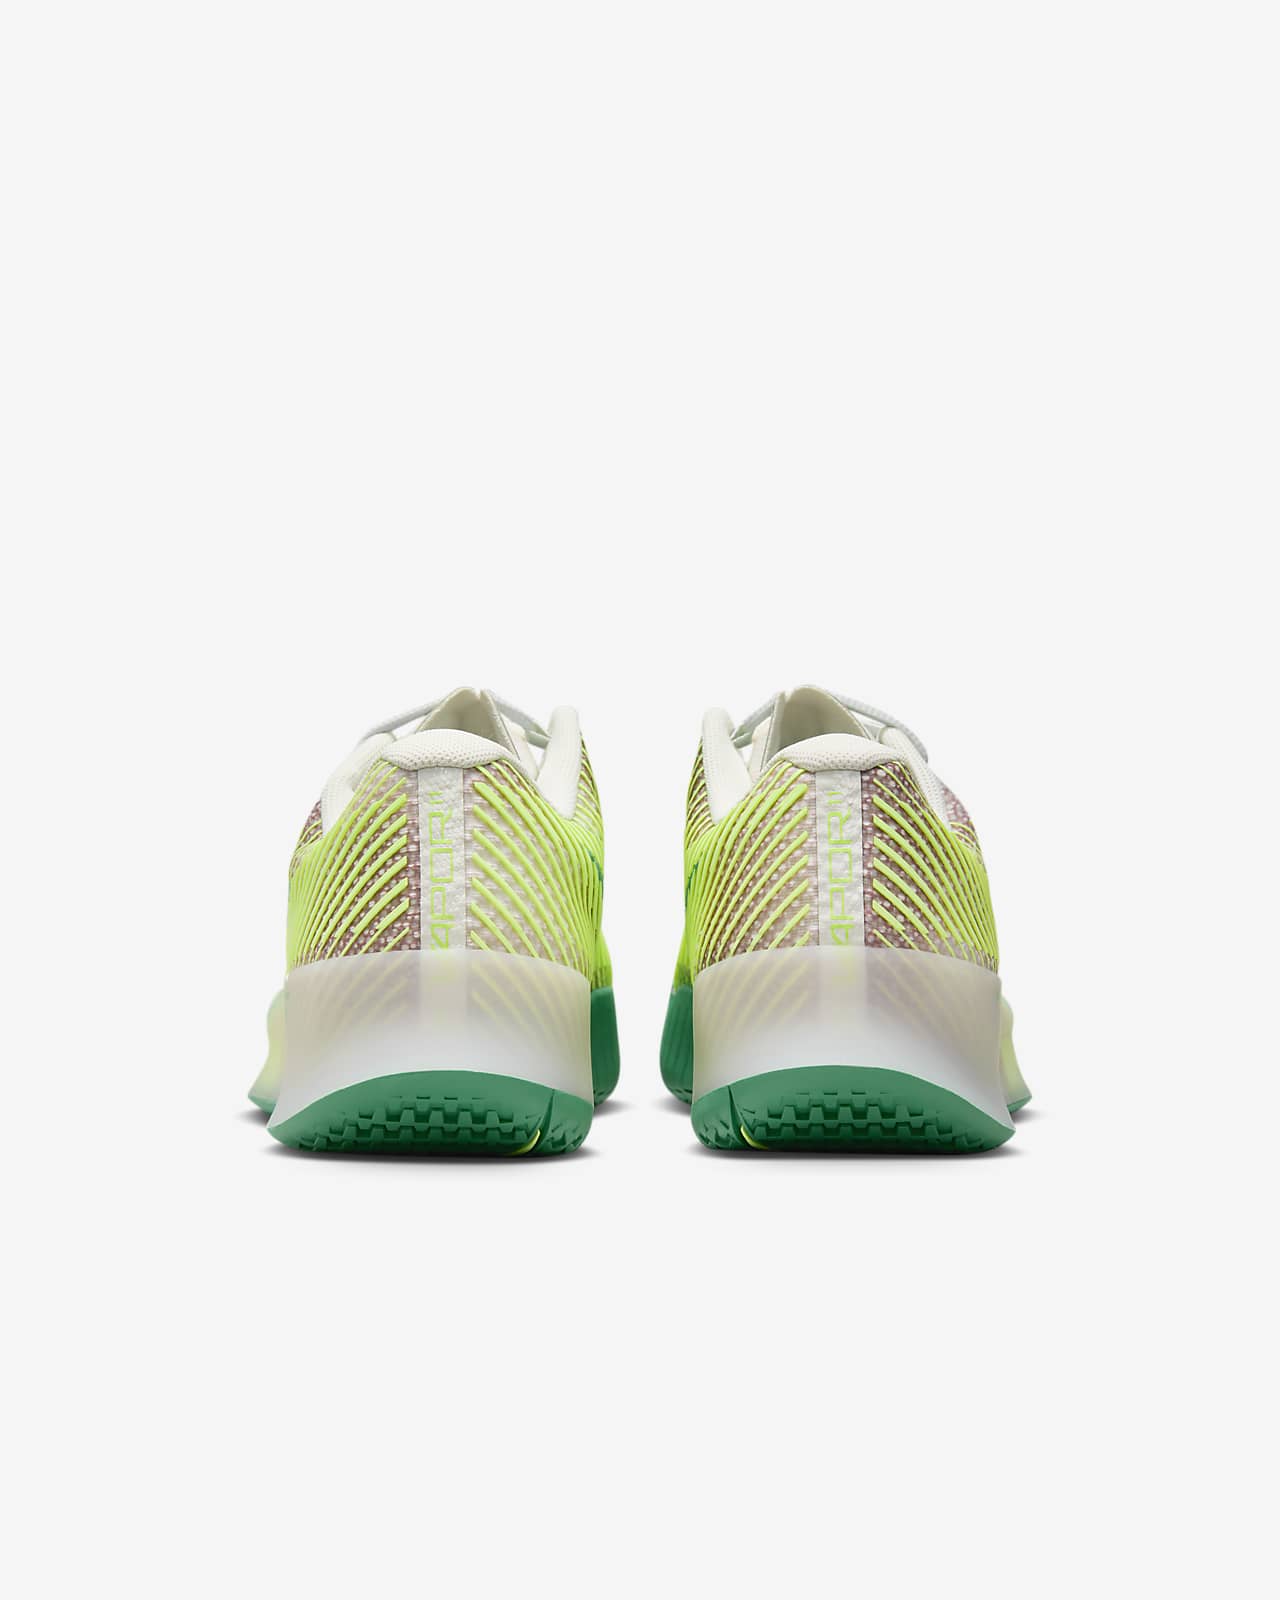 NikeCourt Air Zoom Vapor 11 Premium Men's Hard Court Tennis Shoes